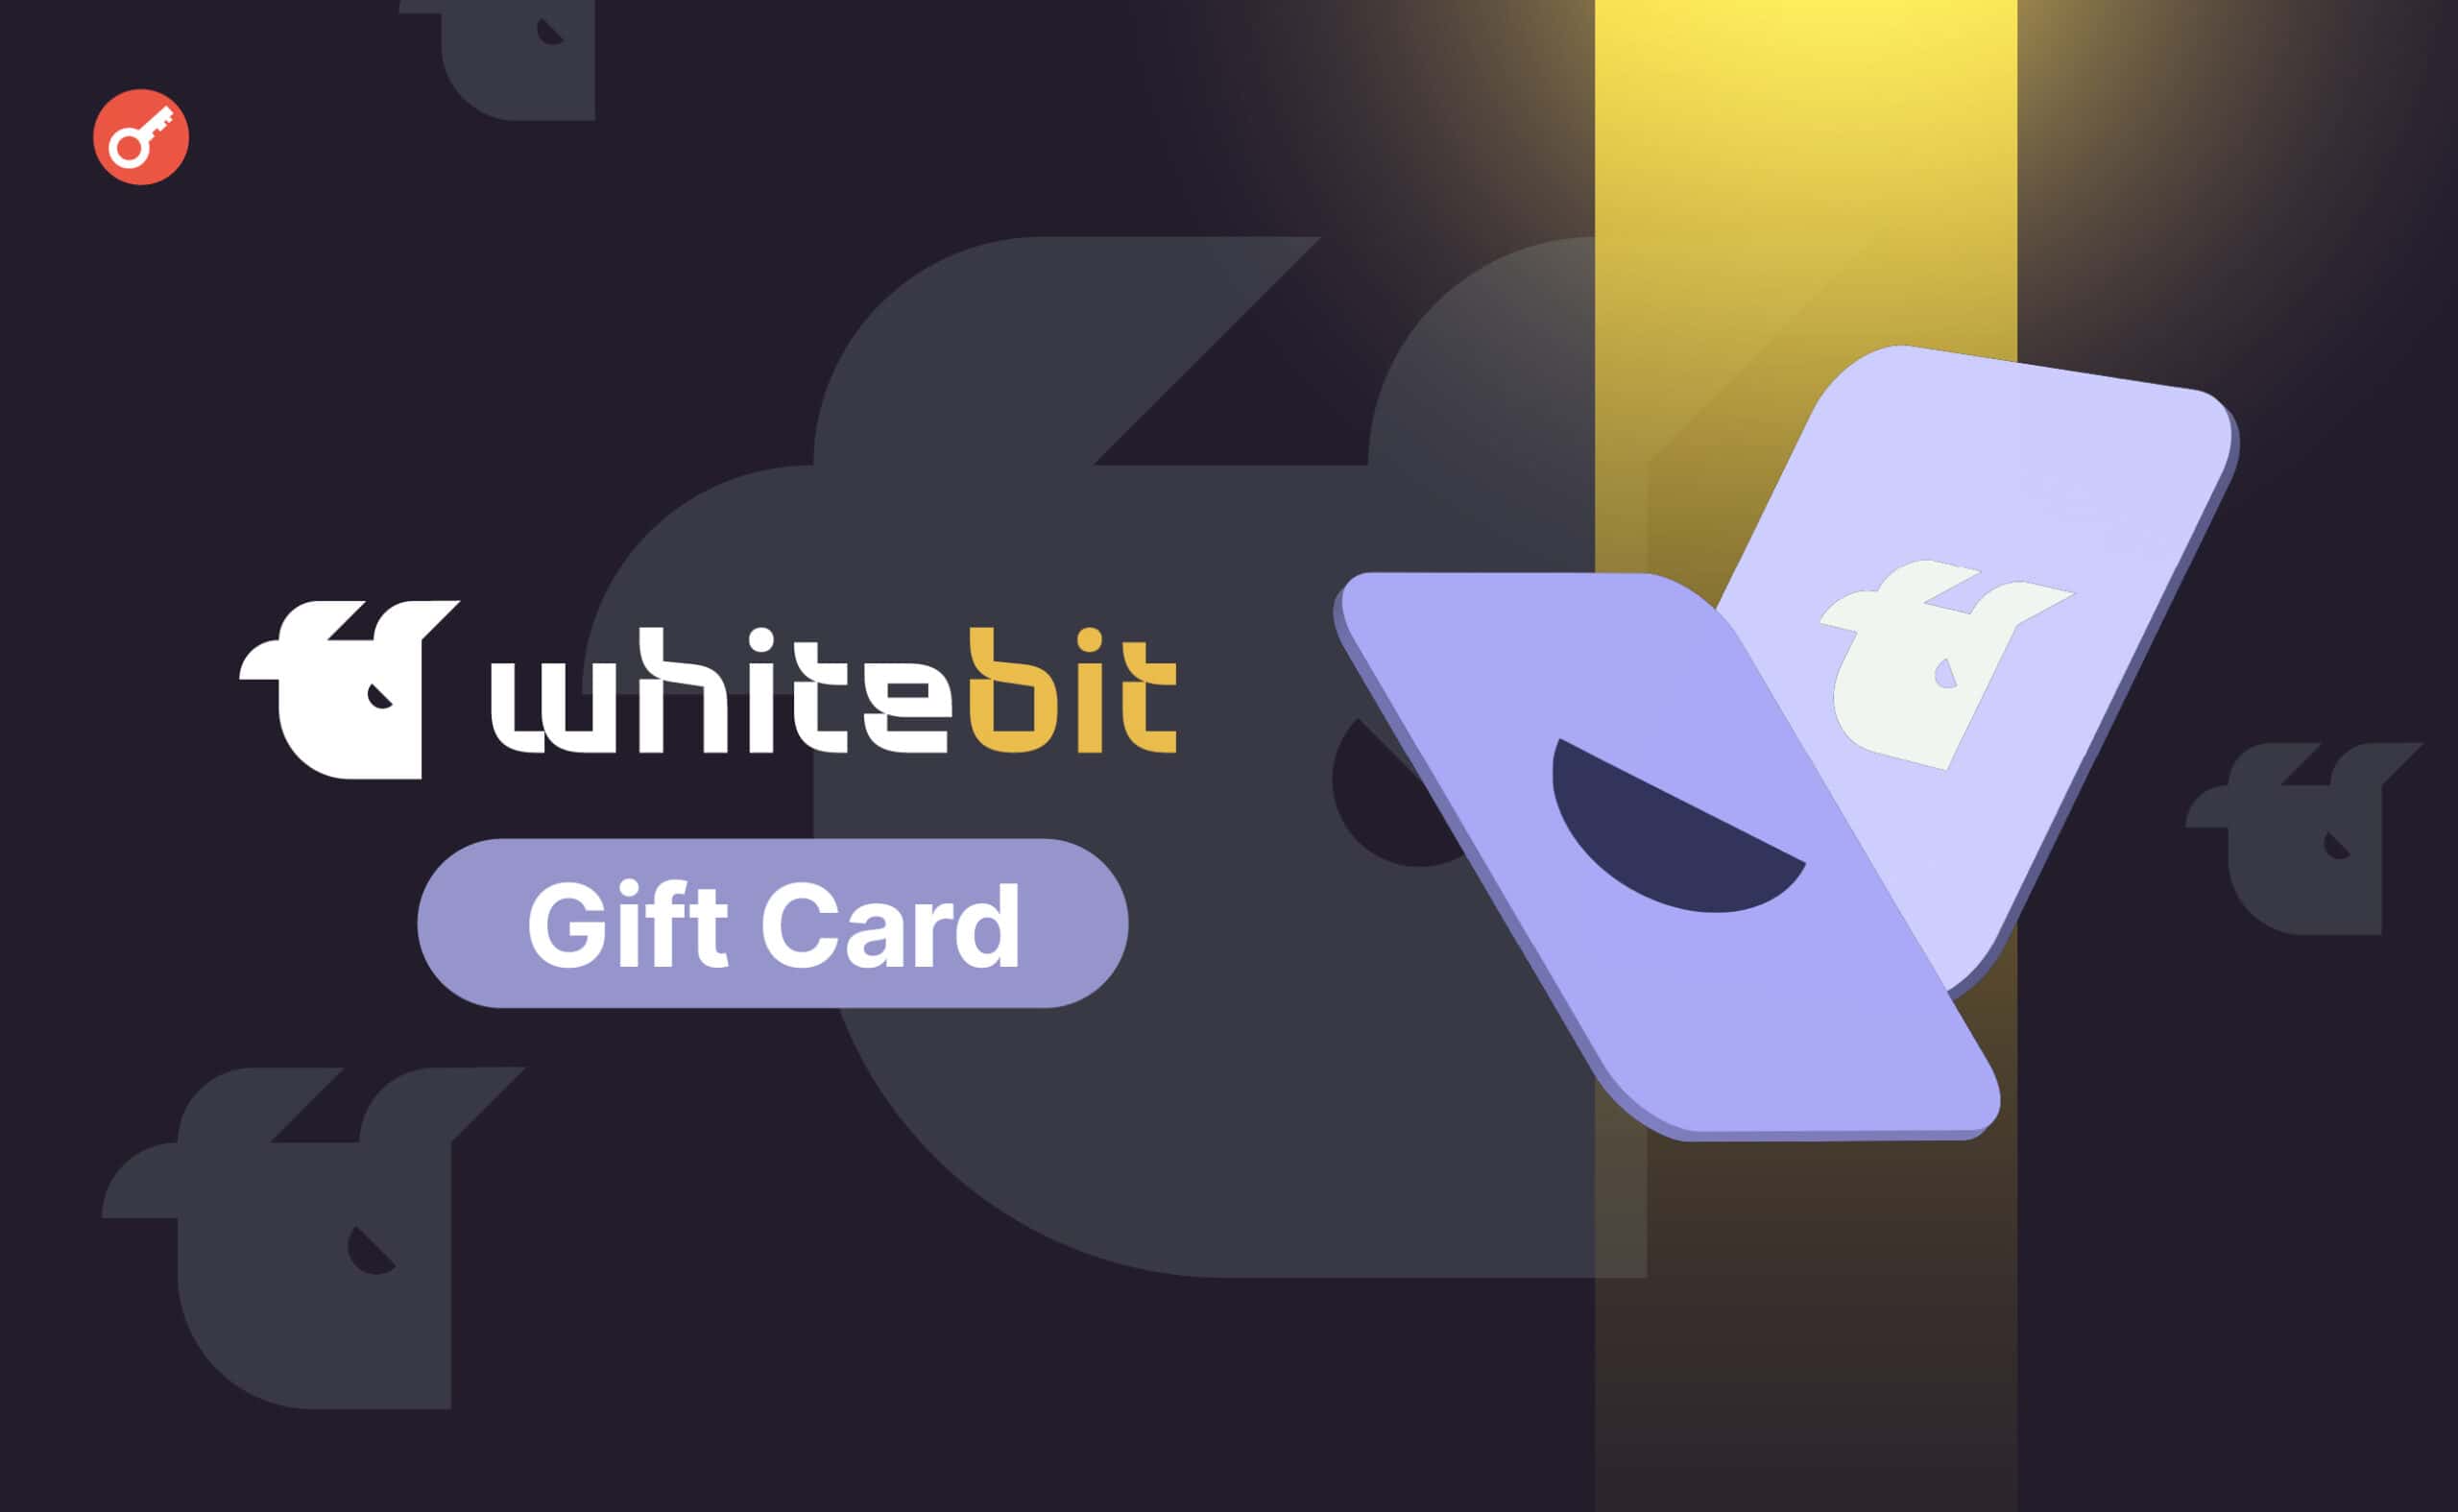 WhiteBIT добавила подарочные карты с оплатой в криптовалютах. Заглавный коллаж новости.